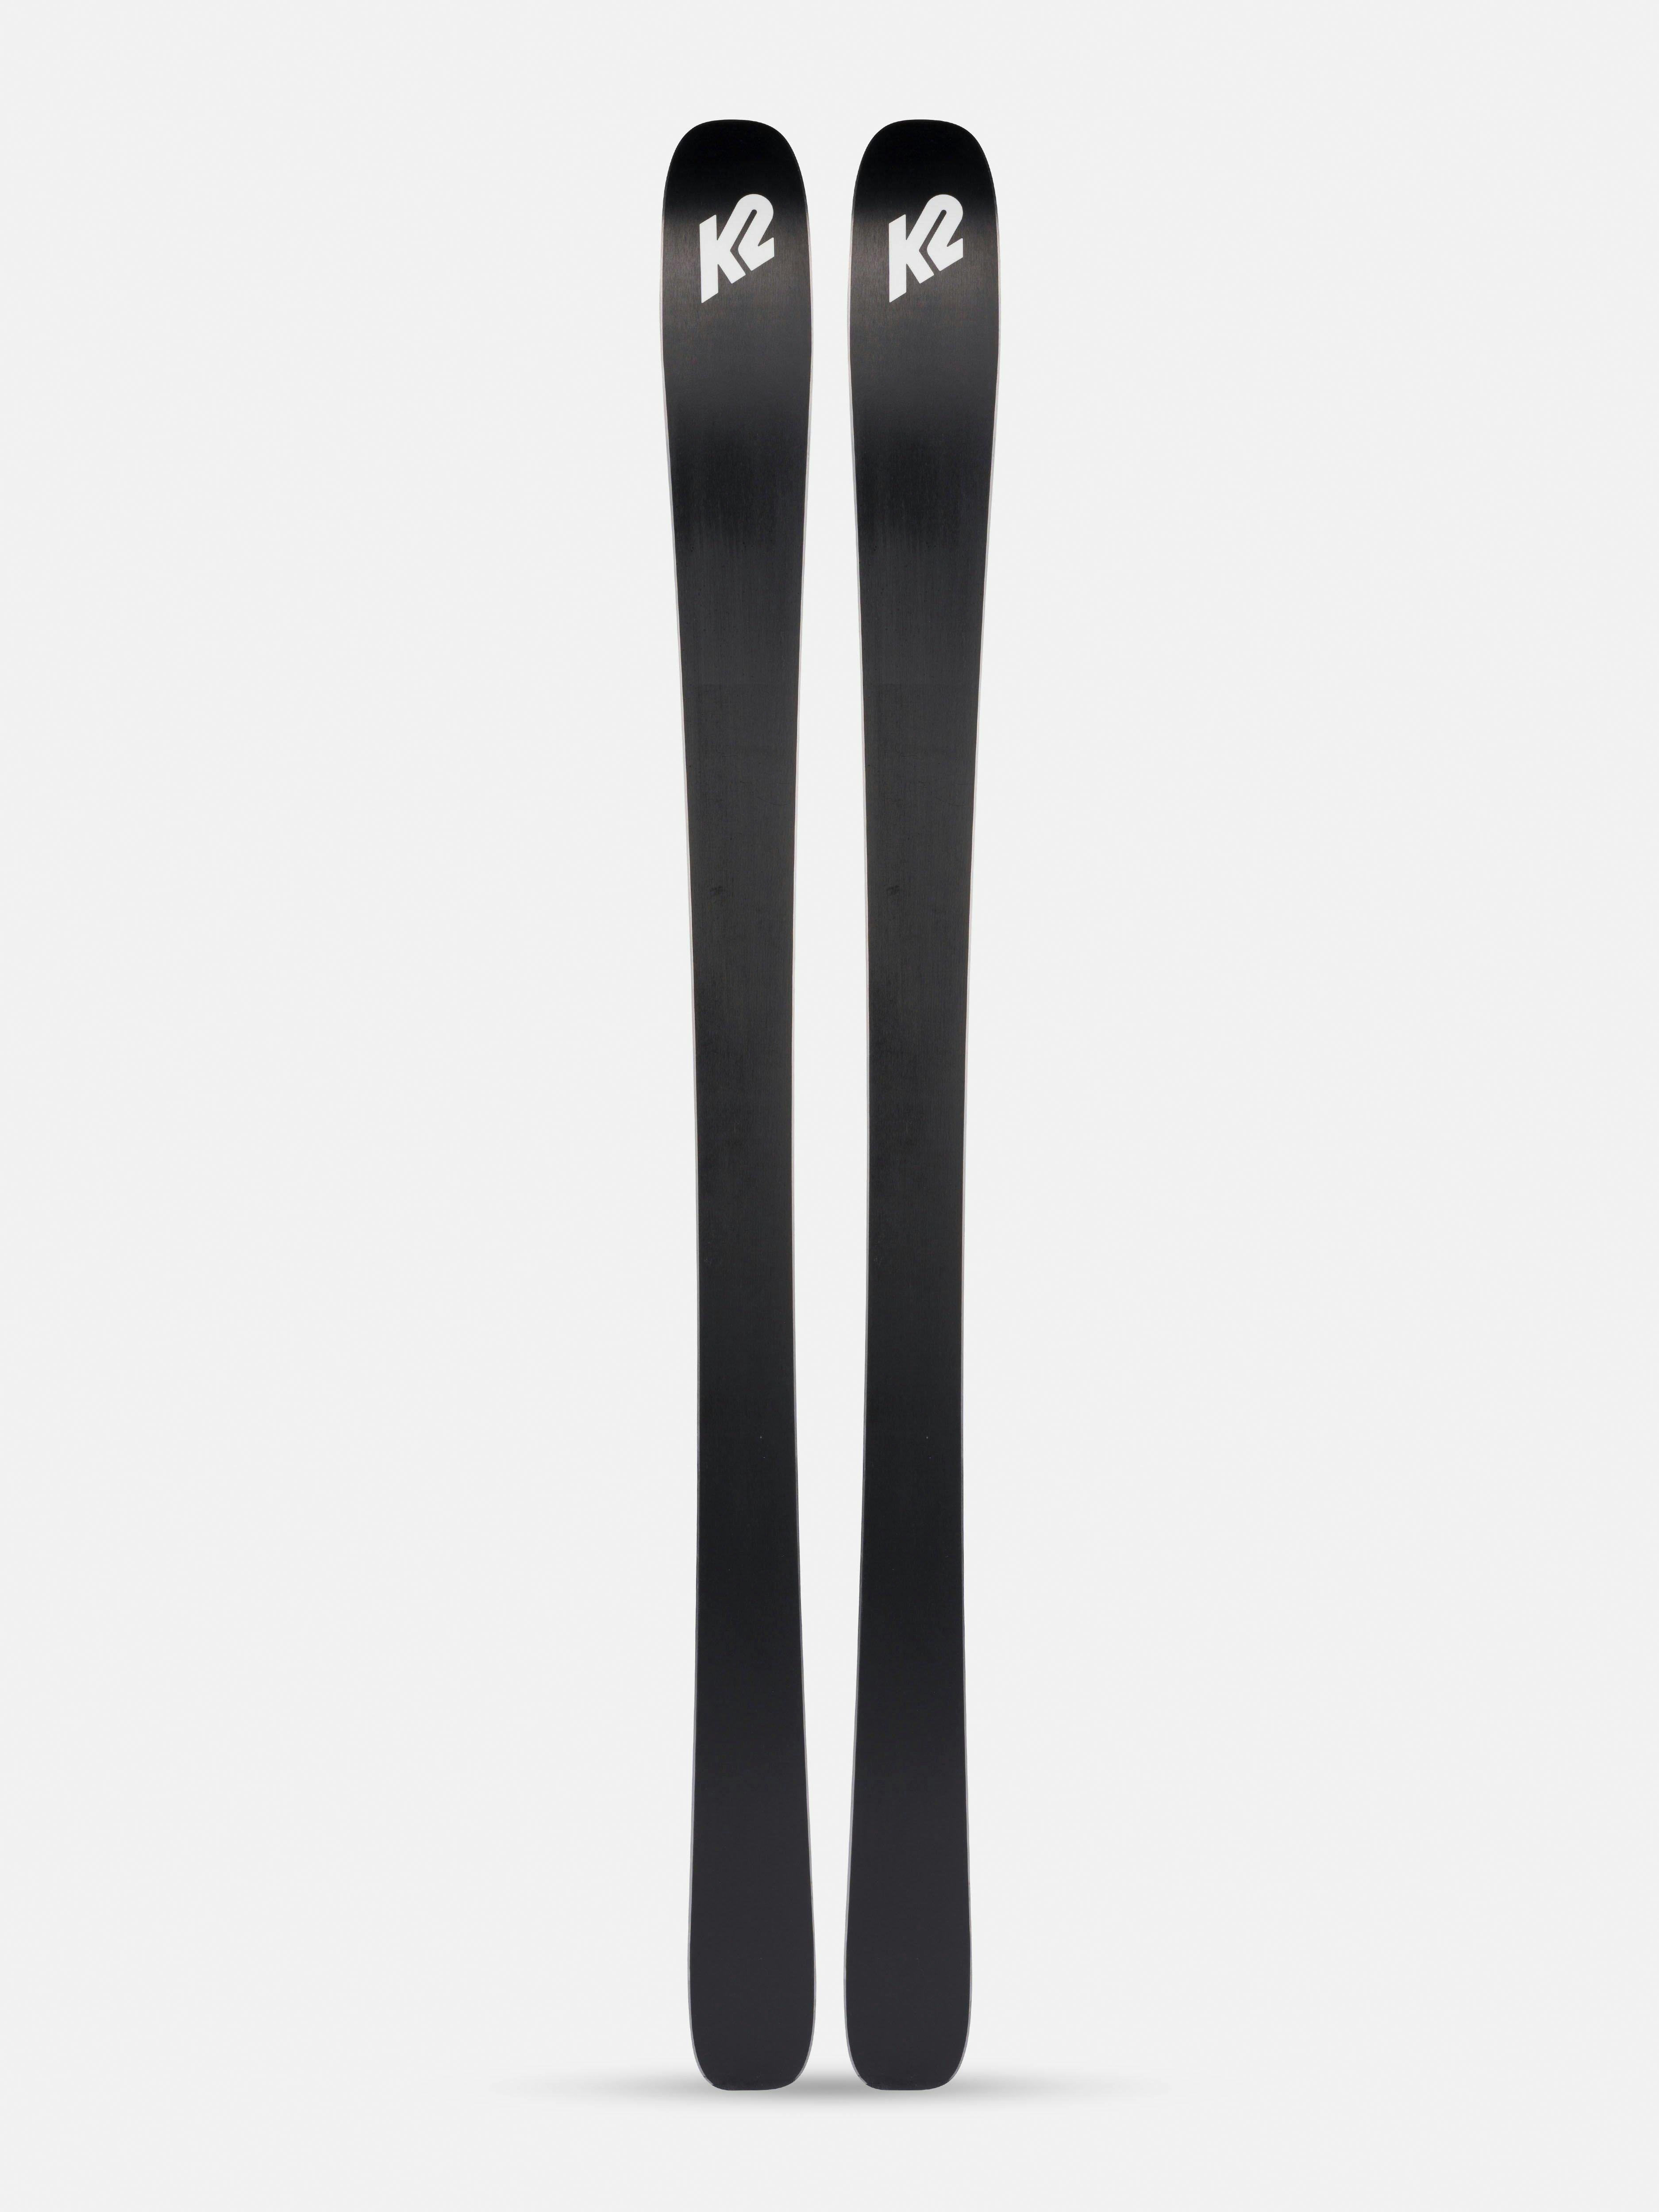 K2 Mindbender 85 Skis · 2022 · 170 cm